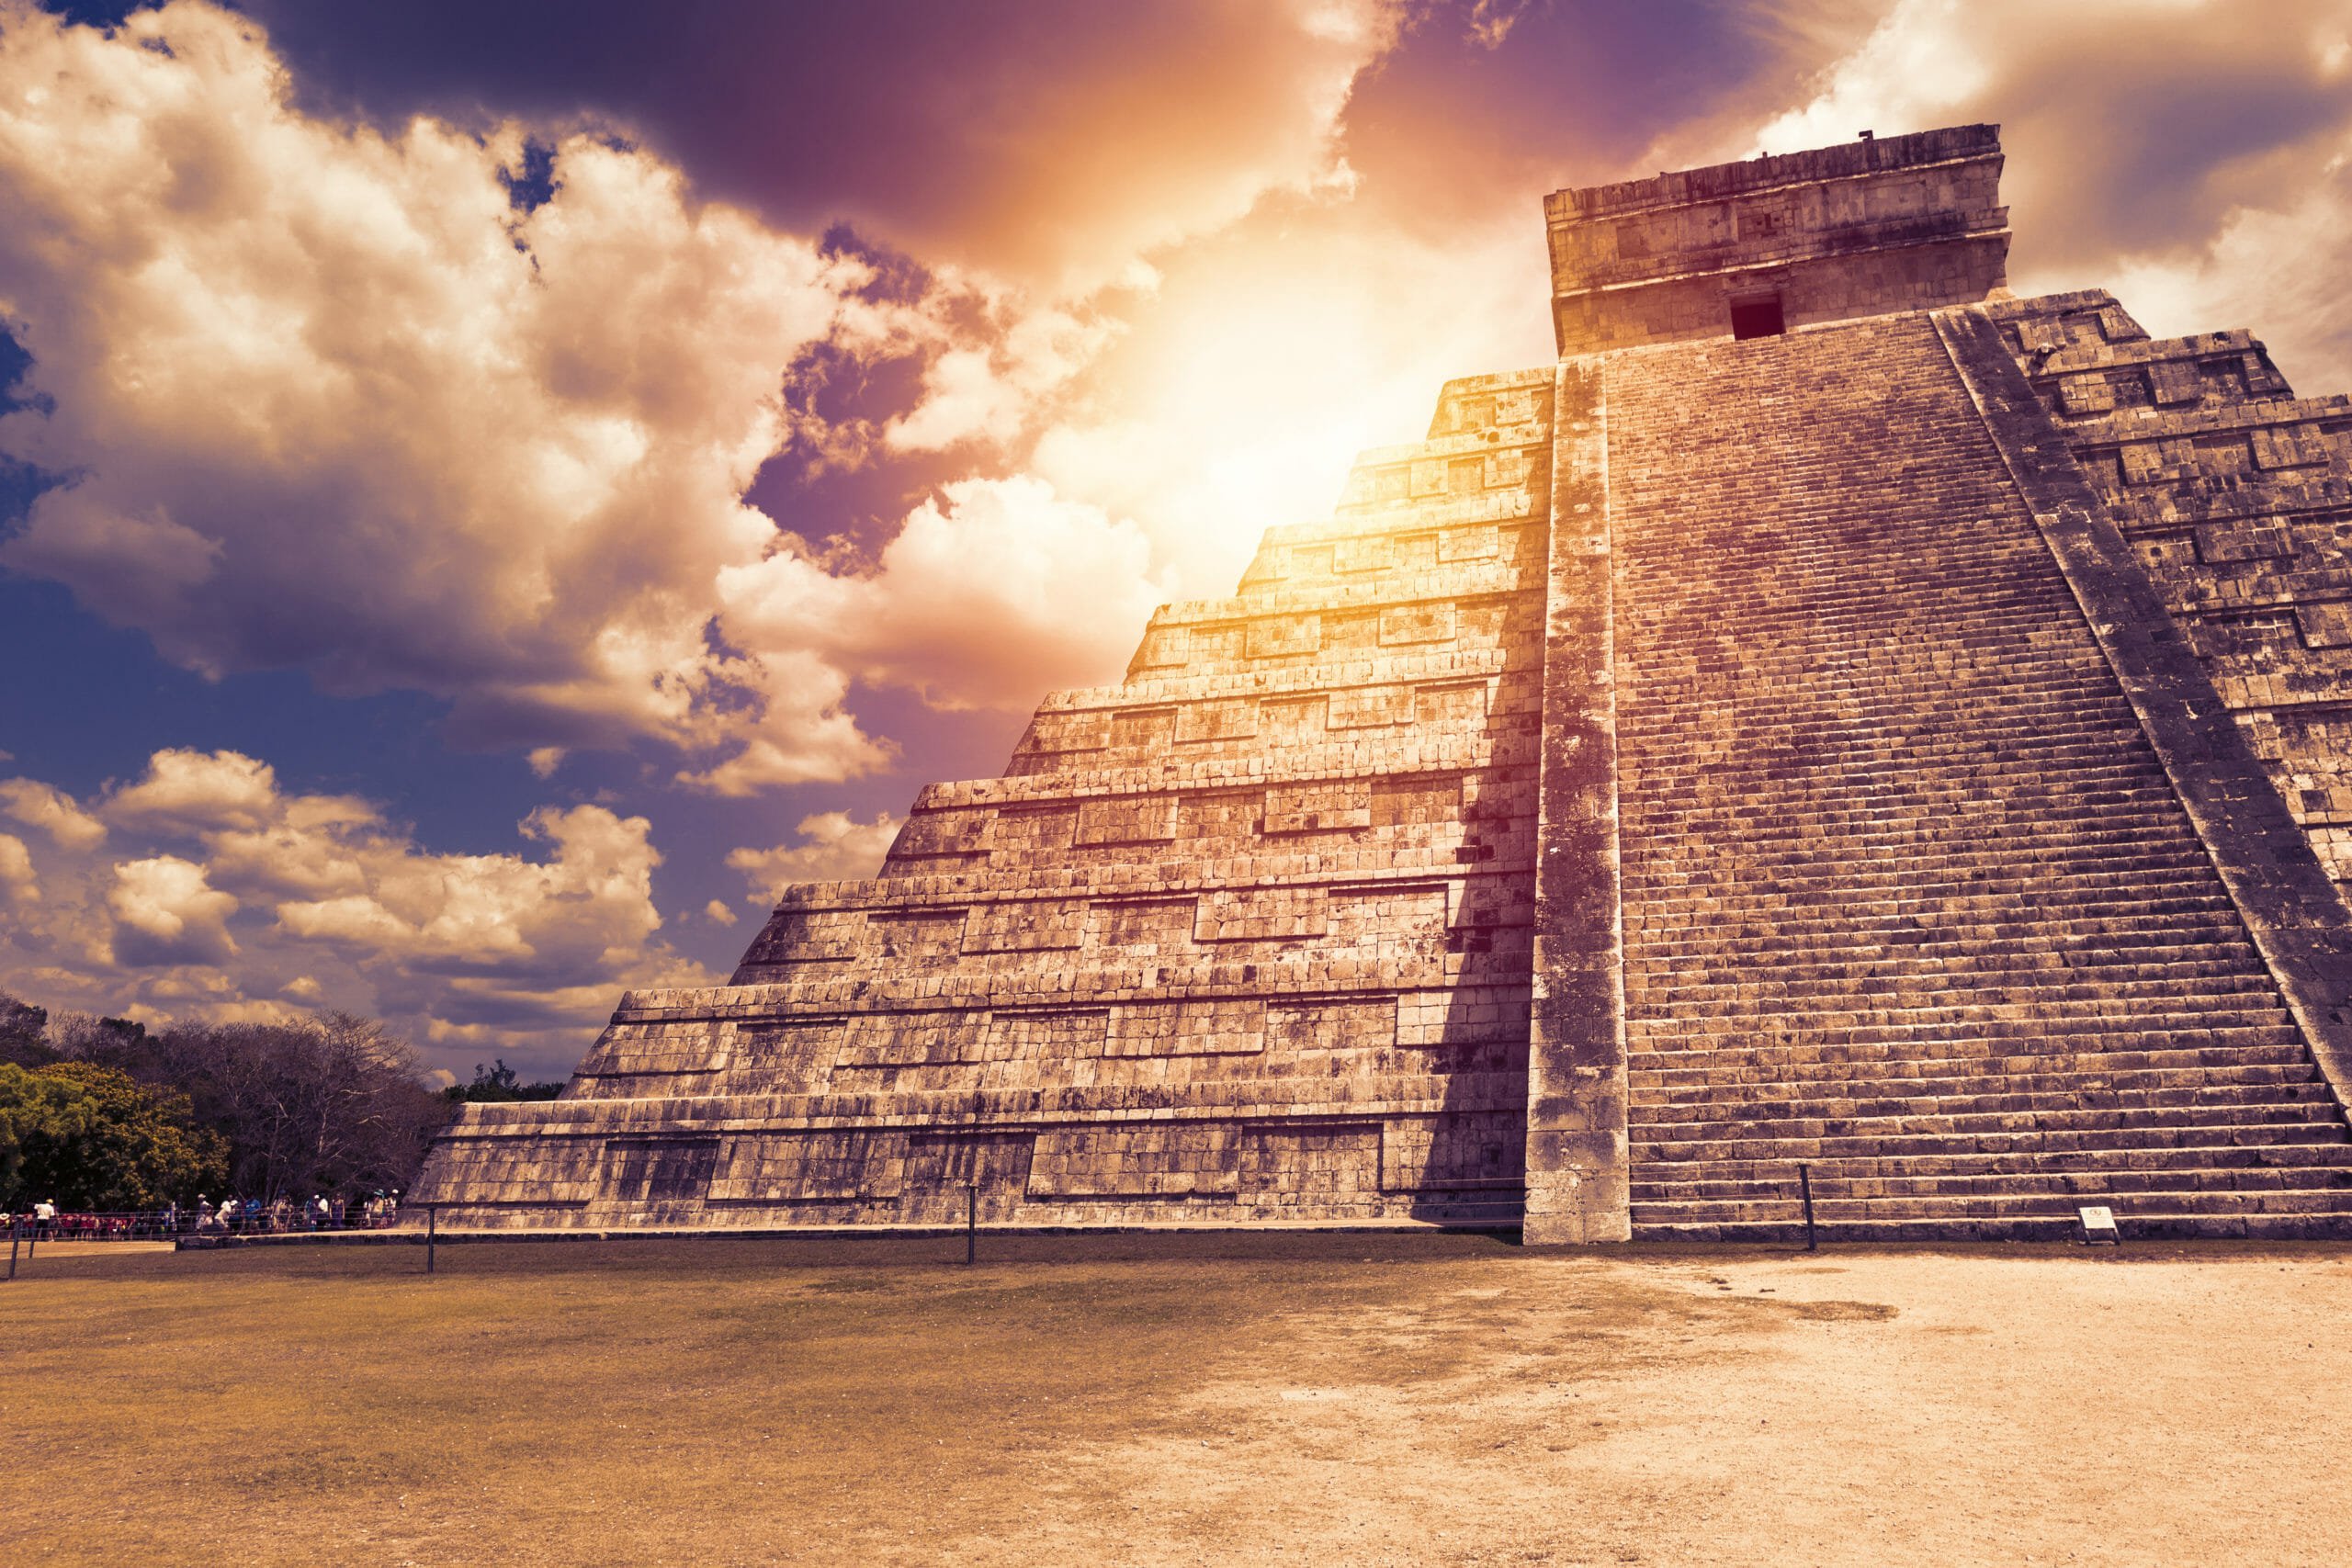 Назовите древние чудеса света. 7 Чудес света Чичен ица. Пирамида Майя Чичен-ица. Чичен ица Мексика чудо. Майя Чичен ица.